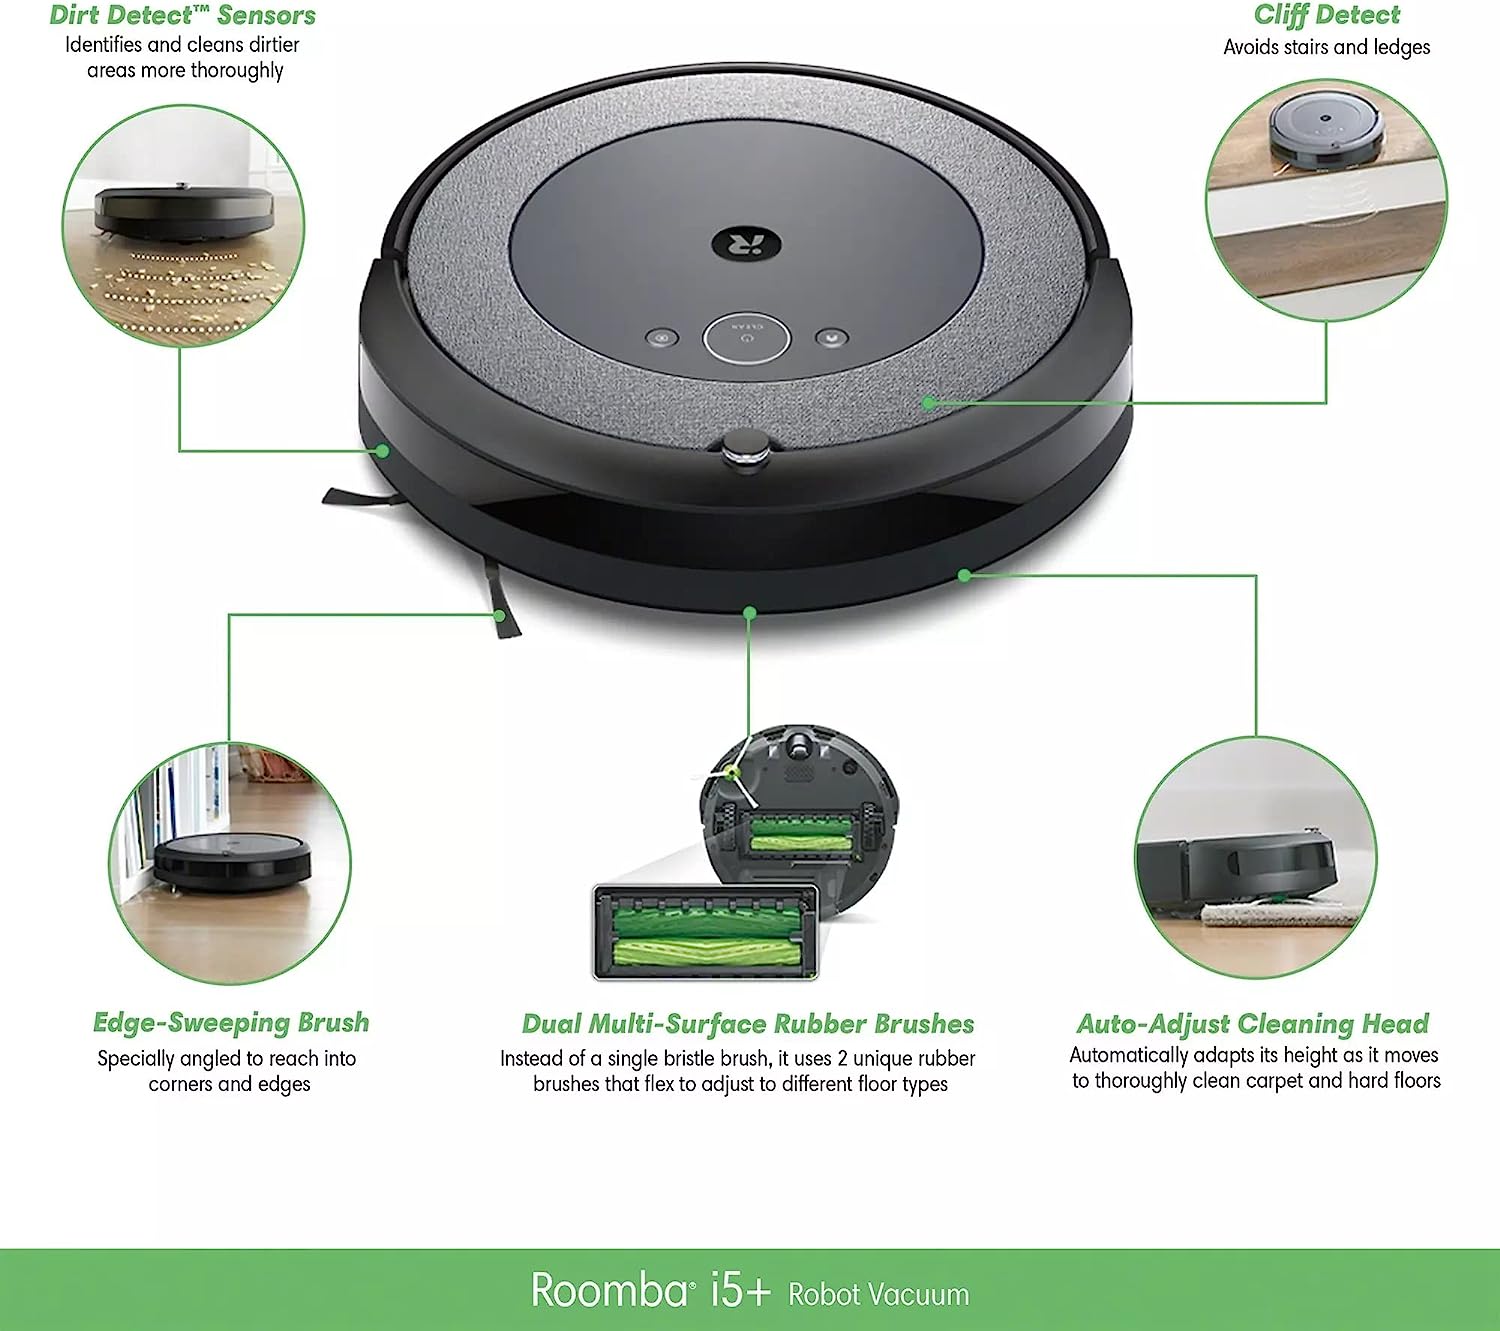 جارو روباتیک مدل iRobot Roomba i5+ Wifi - ارسال الی 10 الی 15 روز کاری